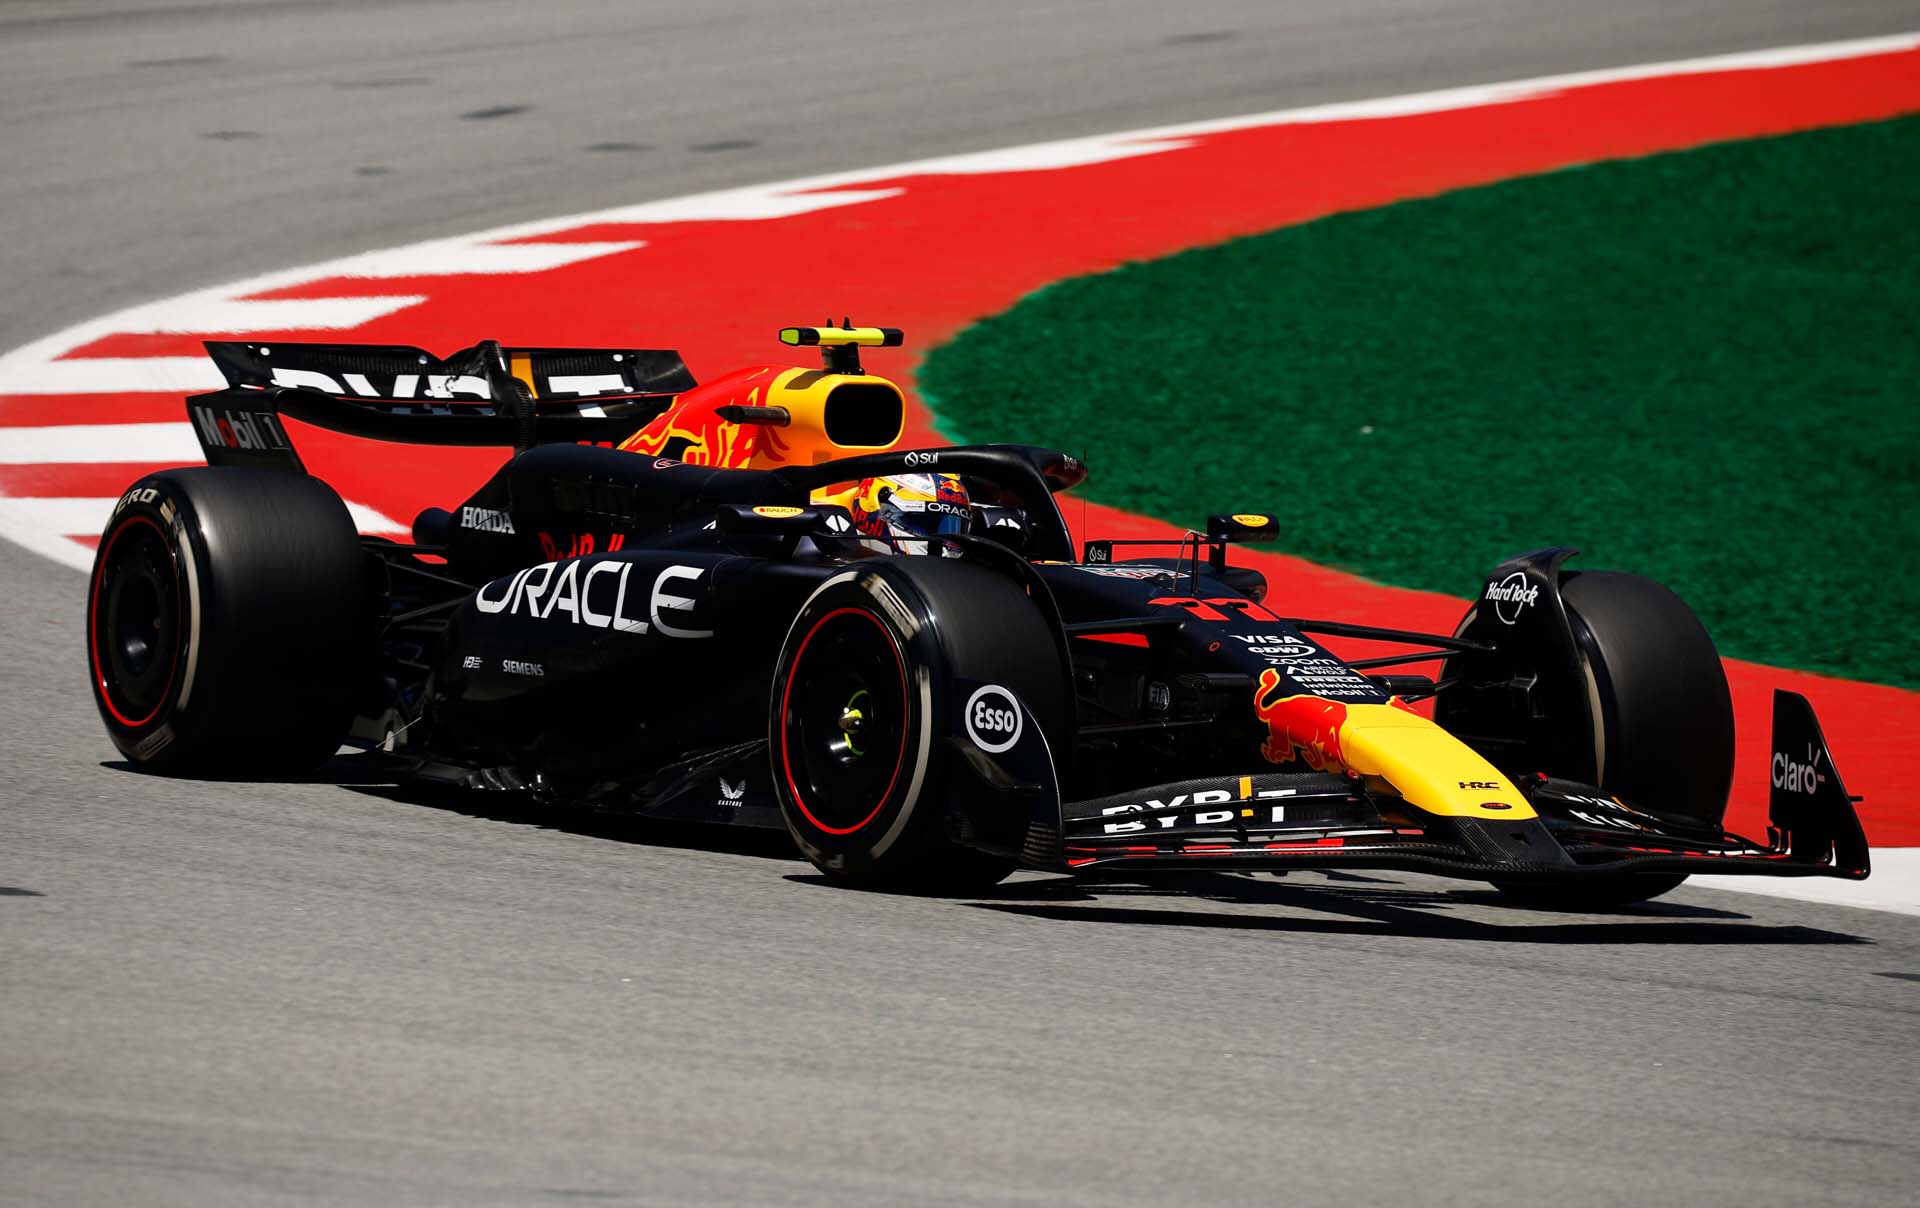 Az F1 pilótája, Horner Perez haragosan reagált újabb csalódást okozó hétvégéjére